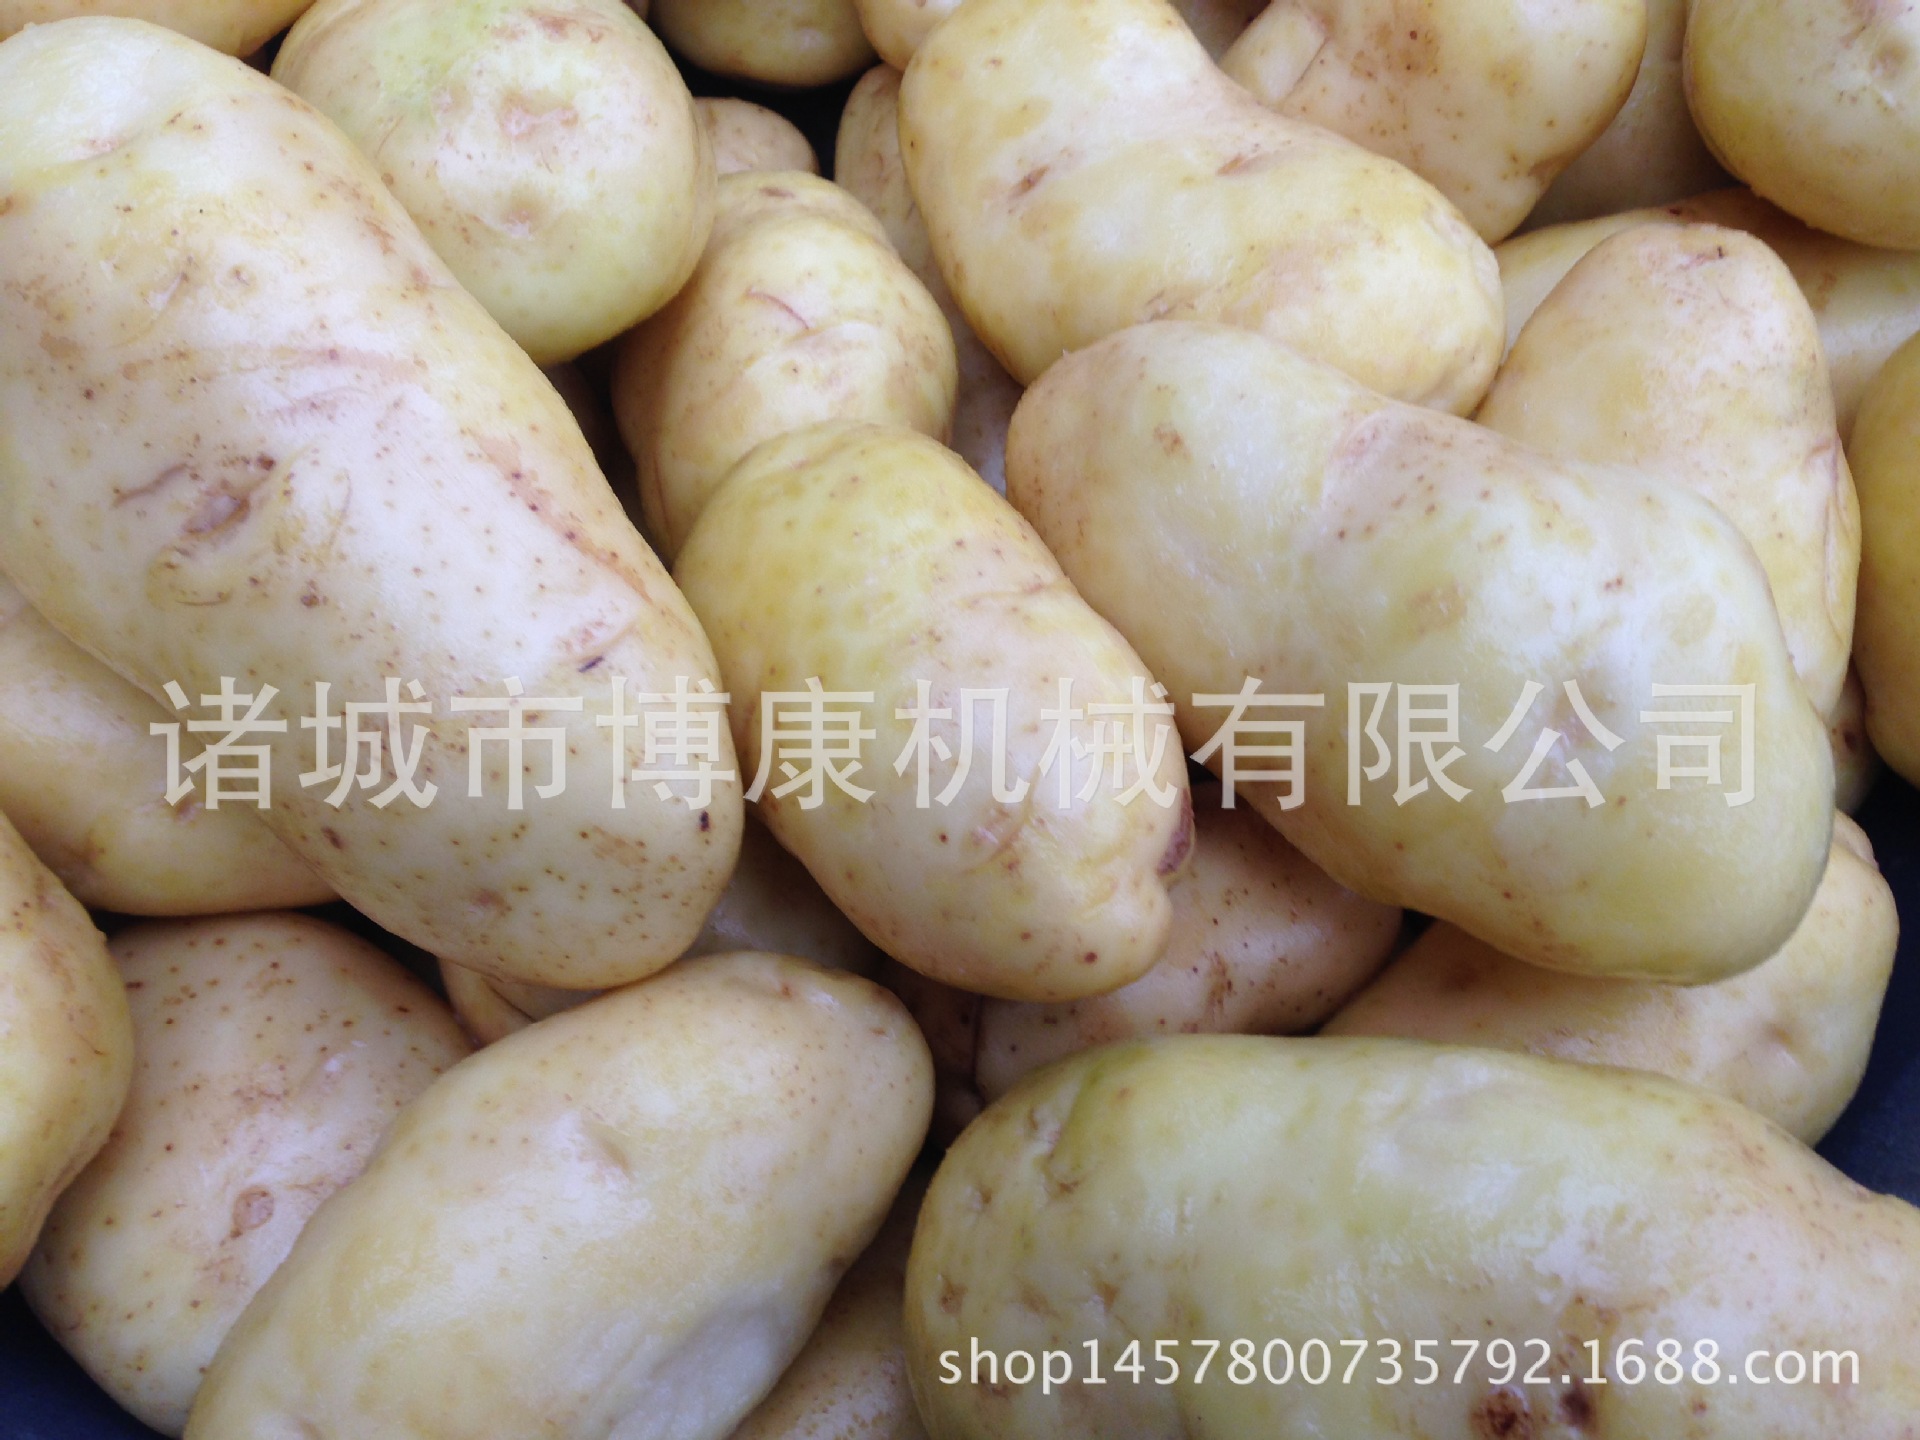 【博康直销】土豆清洗设备、马铃薯、萝卜、芋头清洗去皮设备示例图1